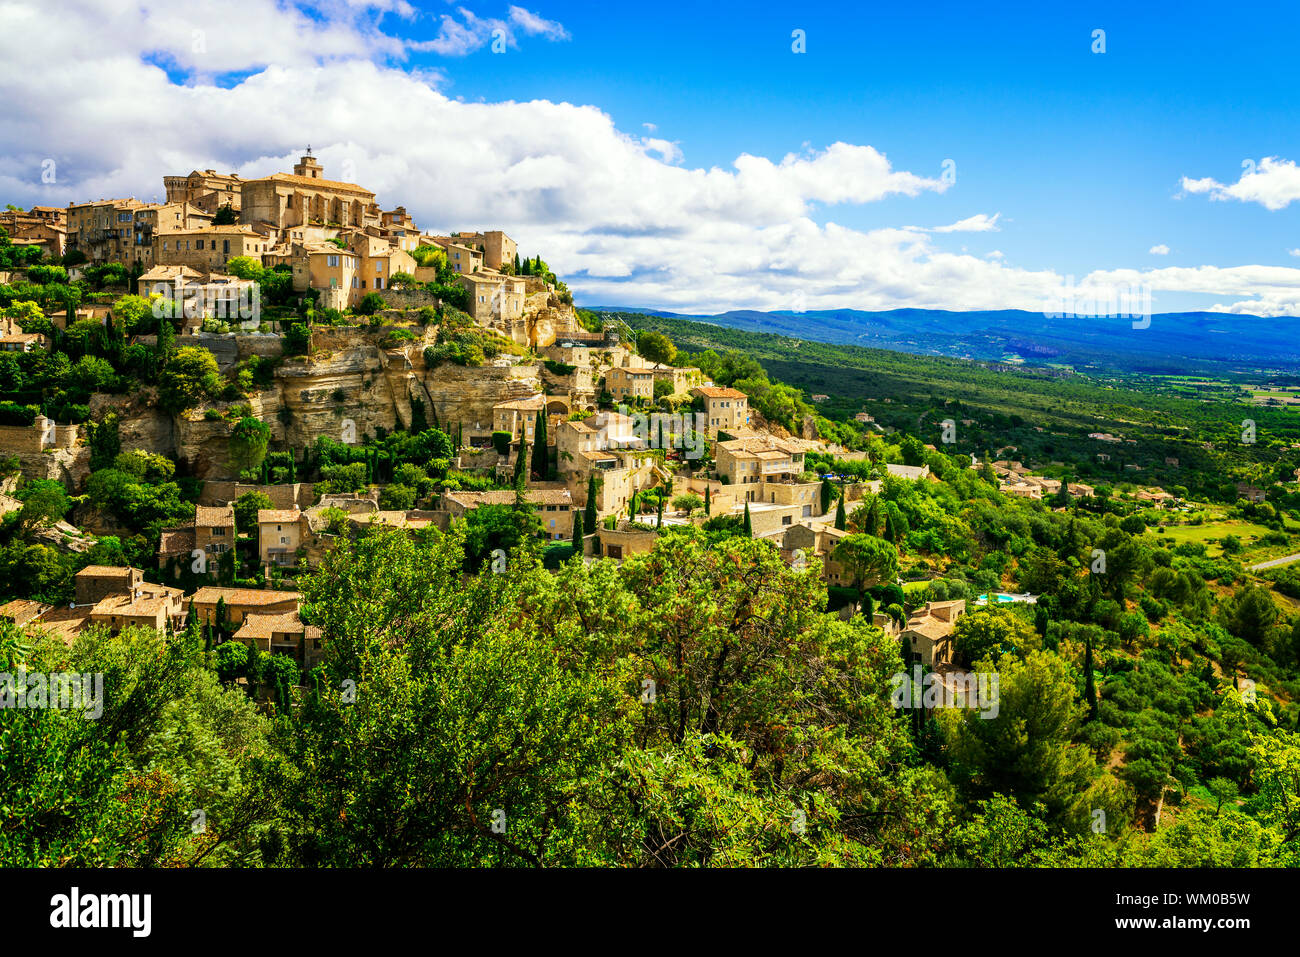 Famoso Gordes borgo medievale nel sud della Francia Foto Stock